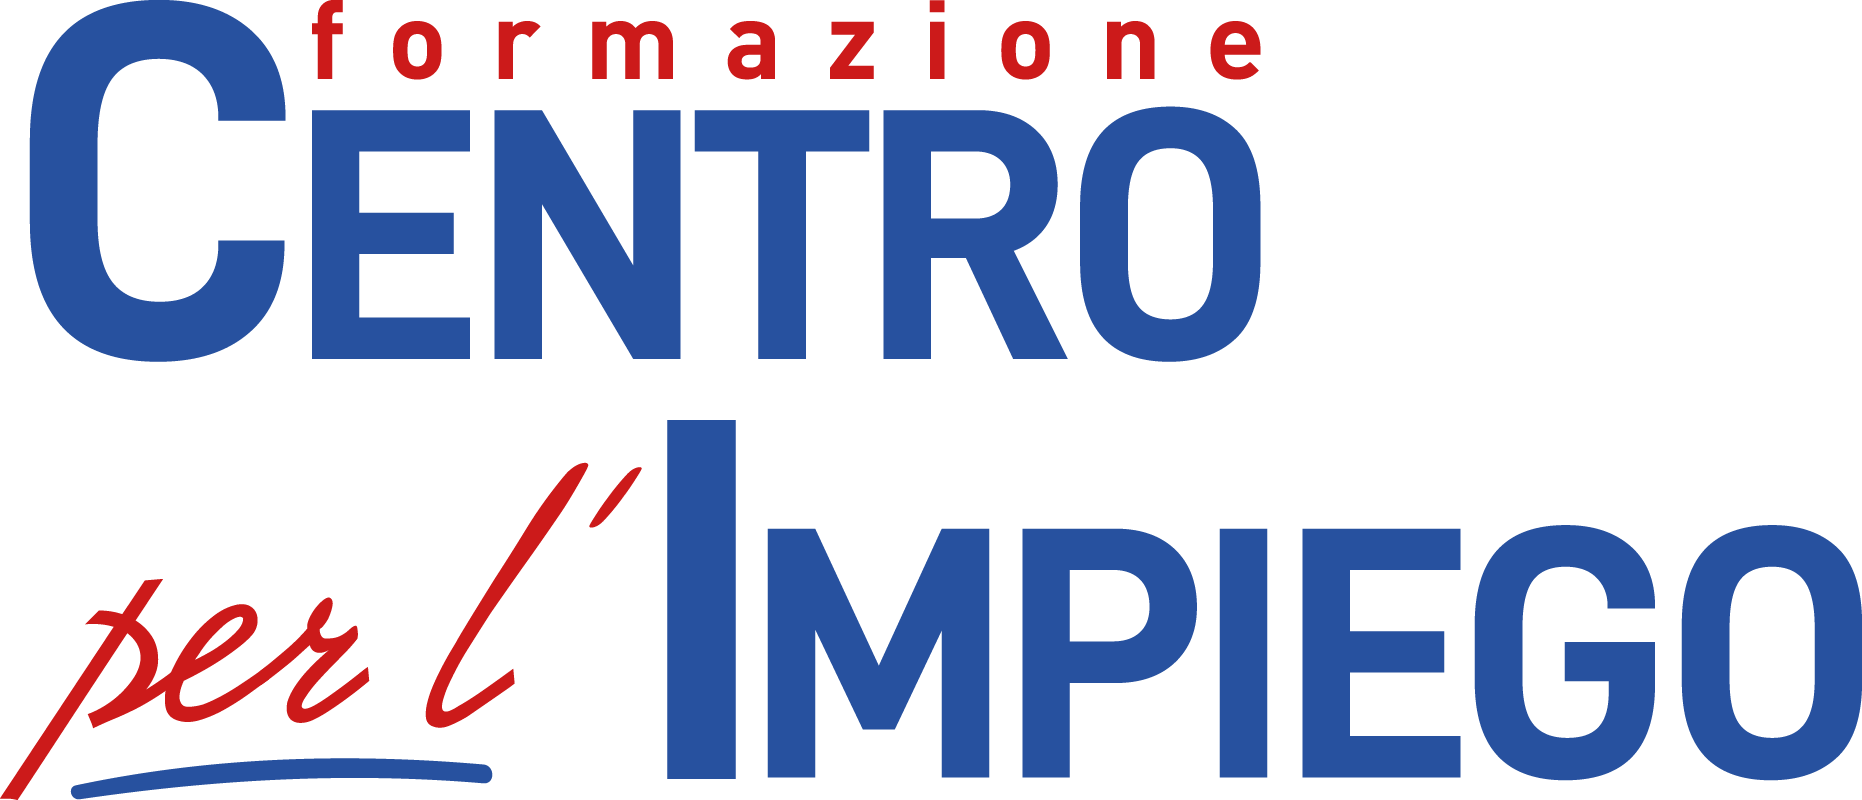 Formazione CPI Campania